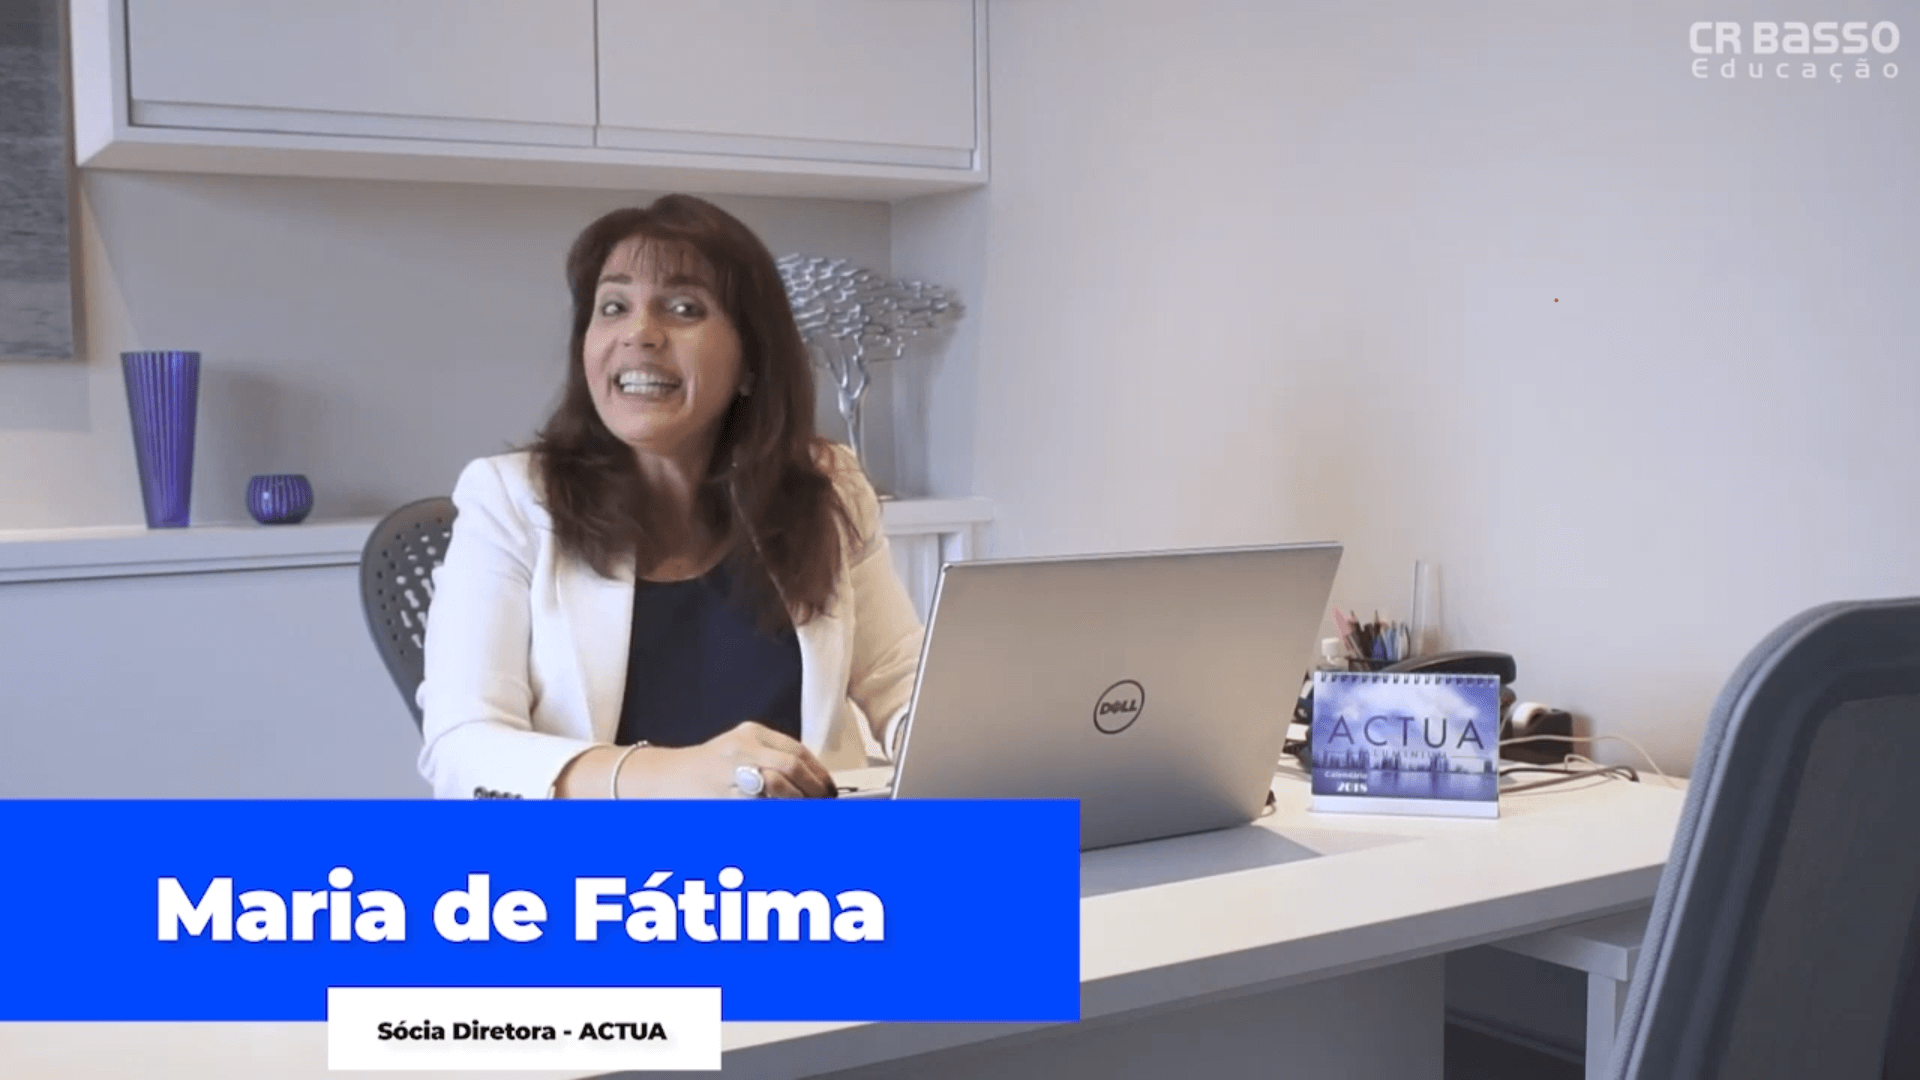 Depoimento Maria de Fátima ACTUA | CR BASSO